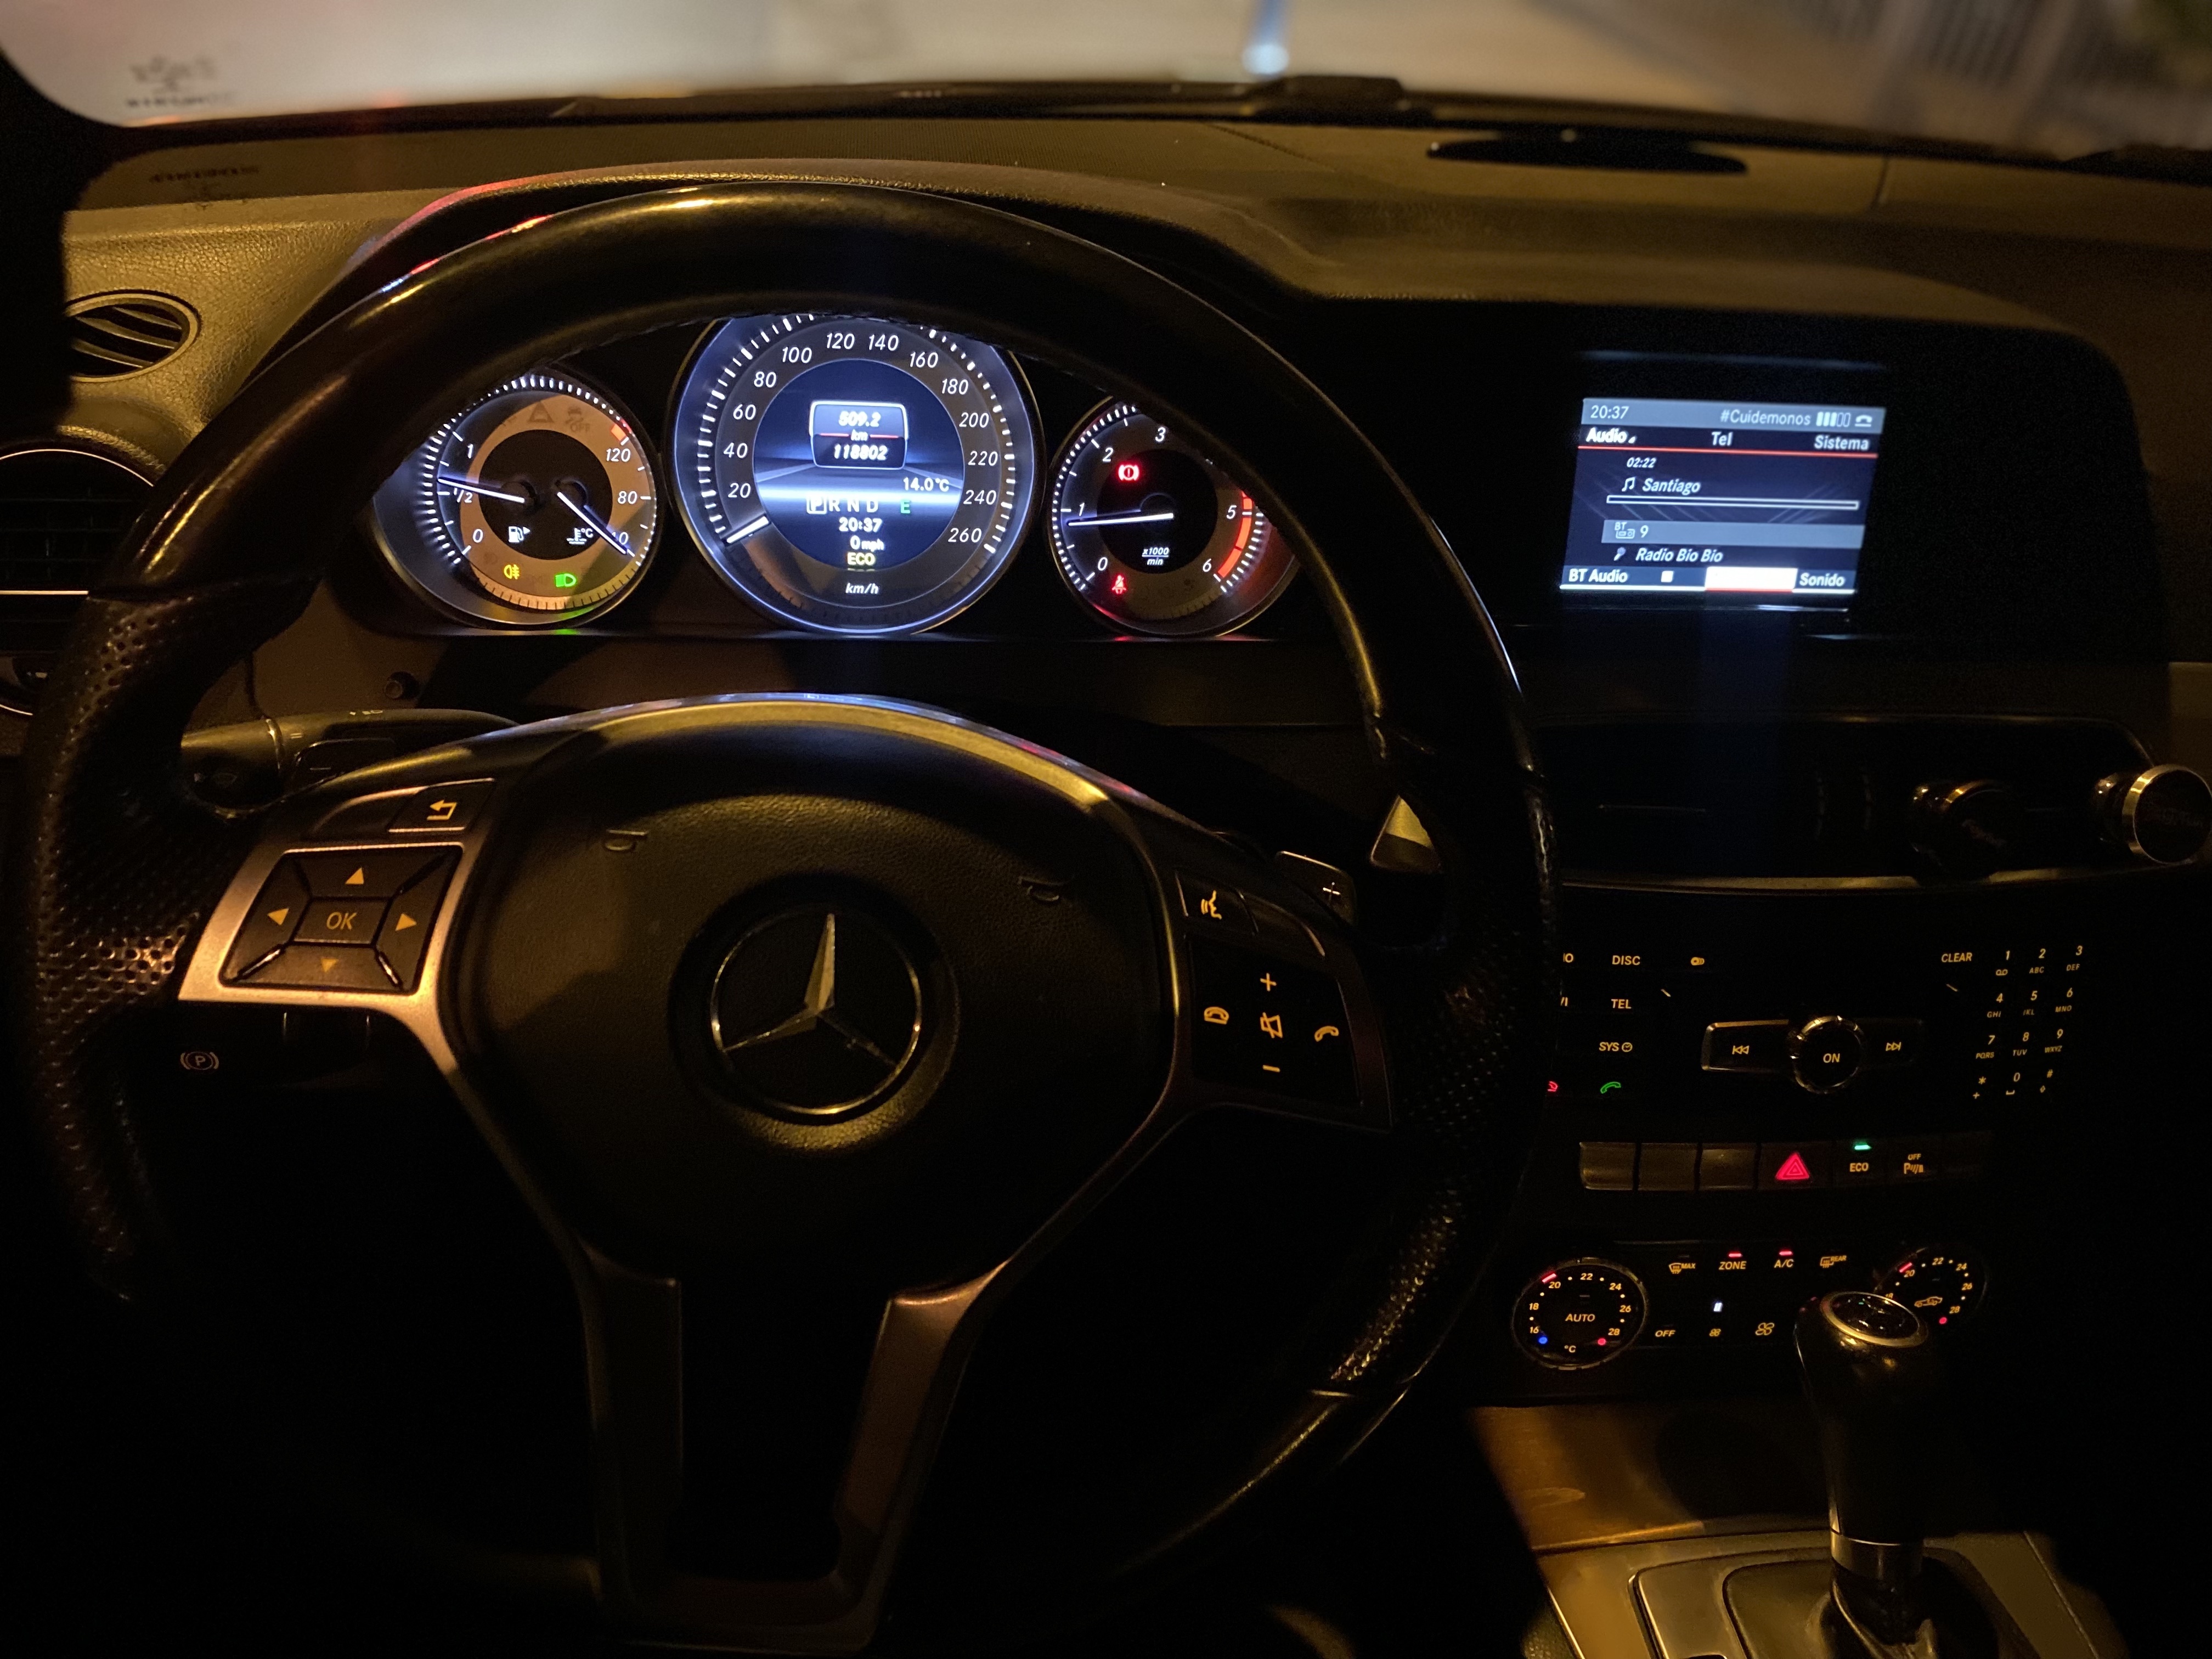 Mercedes-Benz C220 2.1 CDI Blue Efficiency automatico año 2014